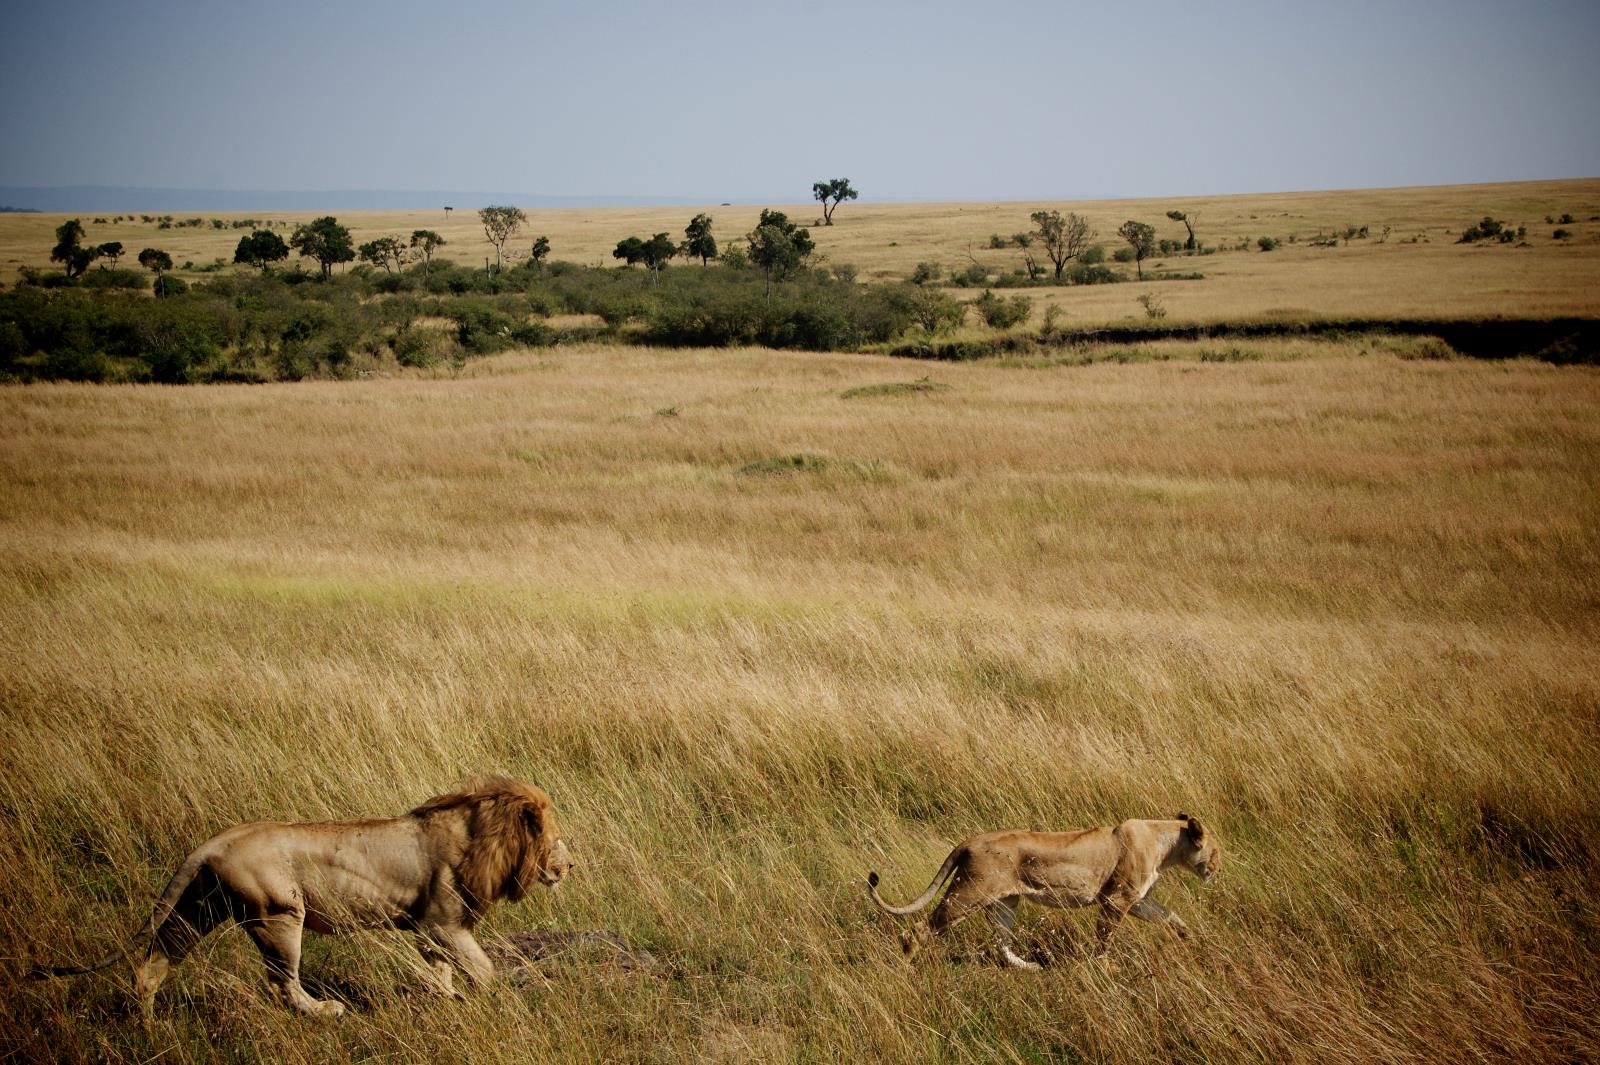 Safari and Lion Encounter at Masai Mara, Kenya